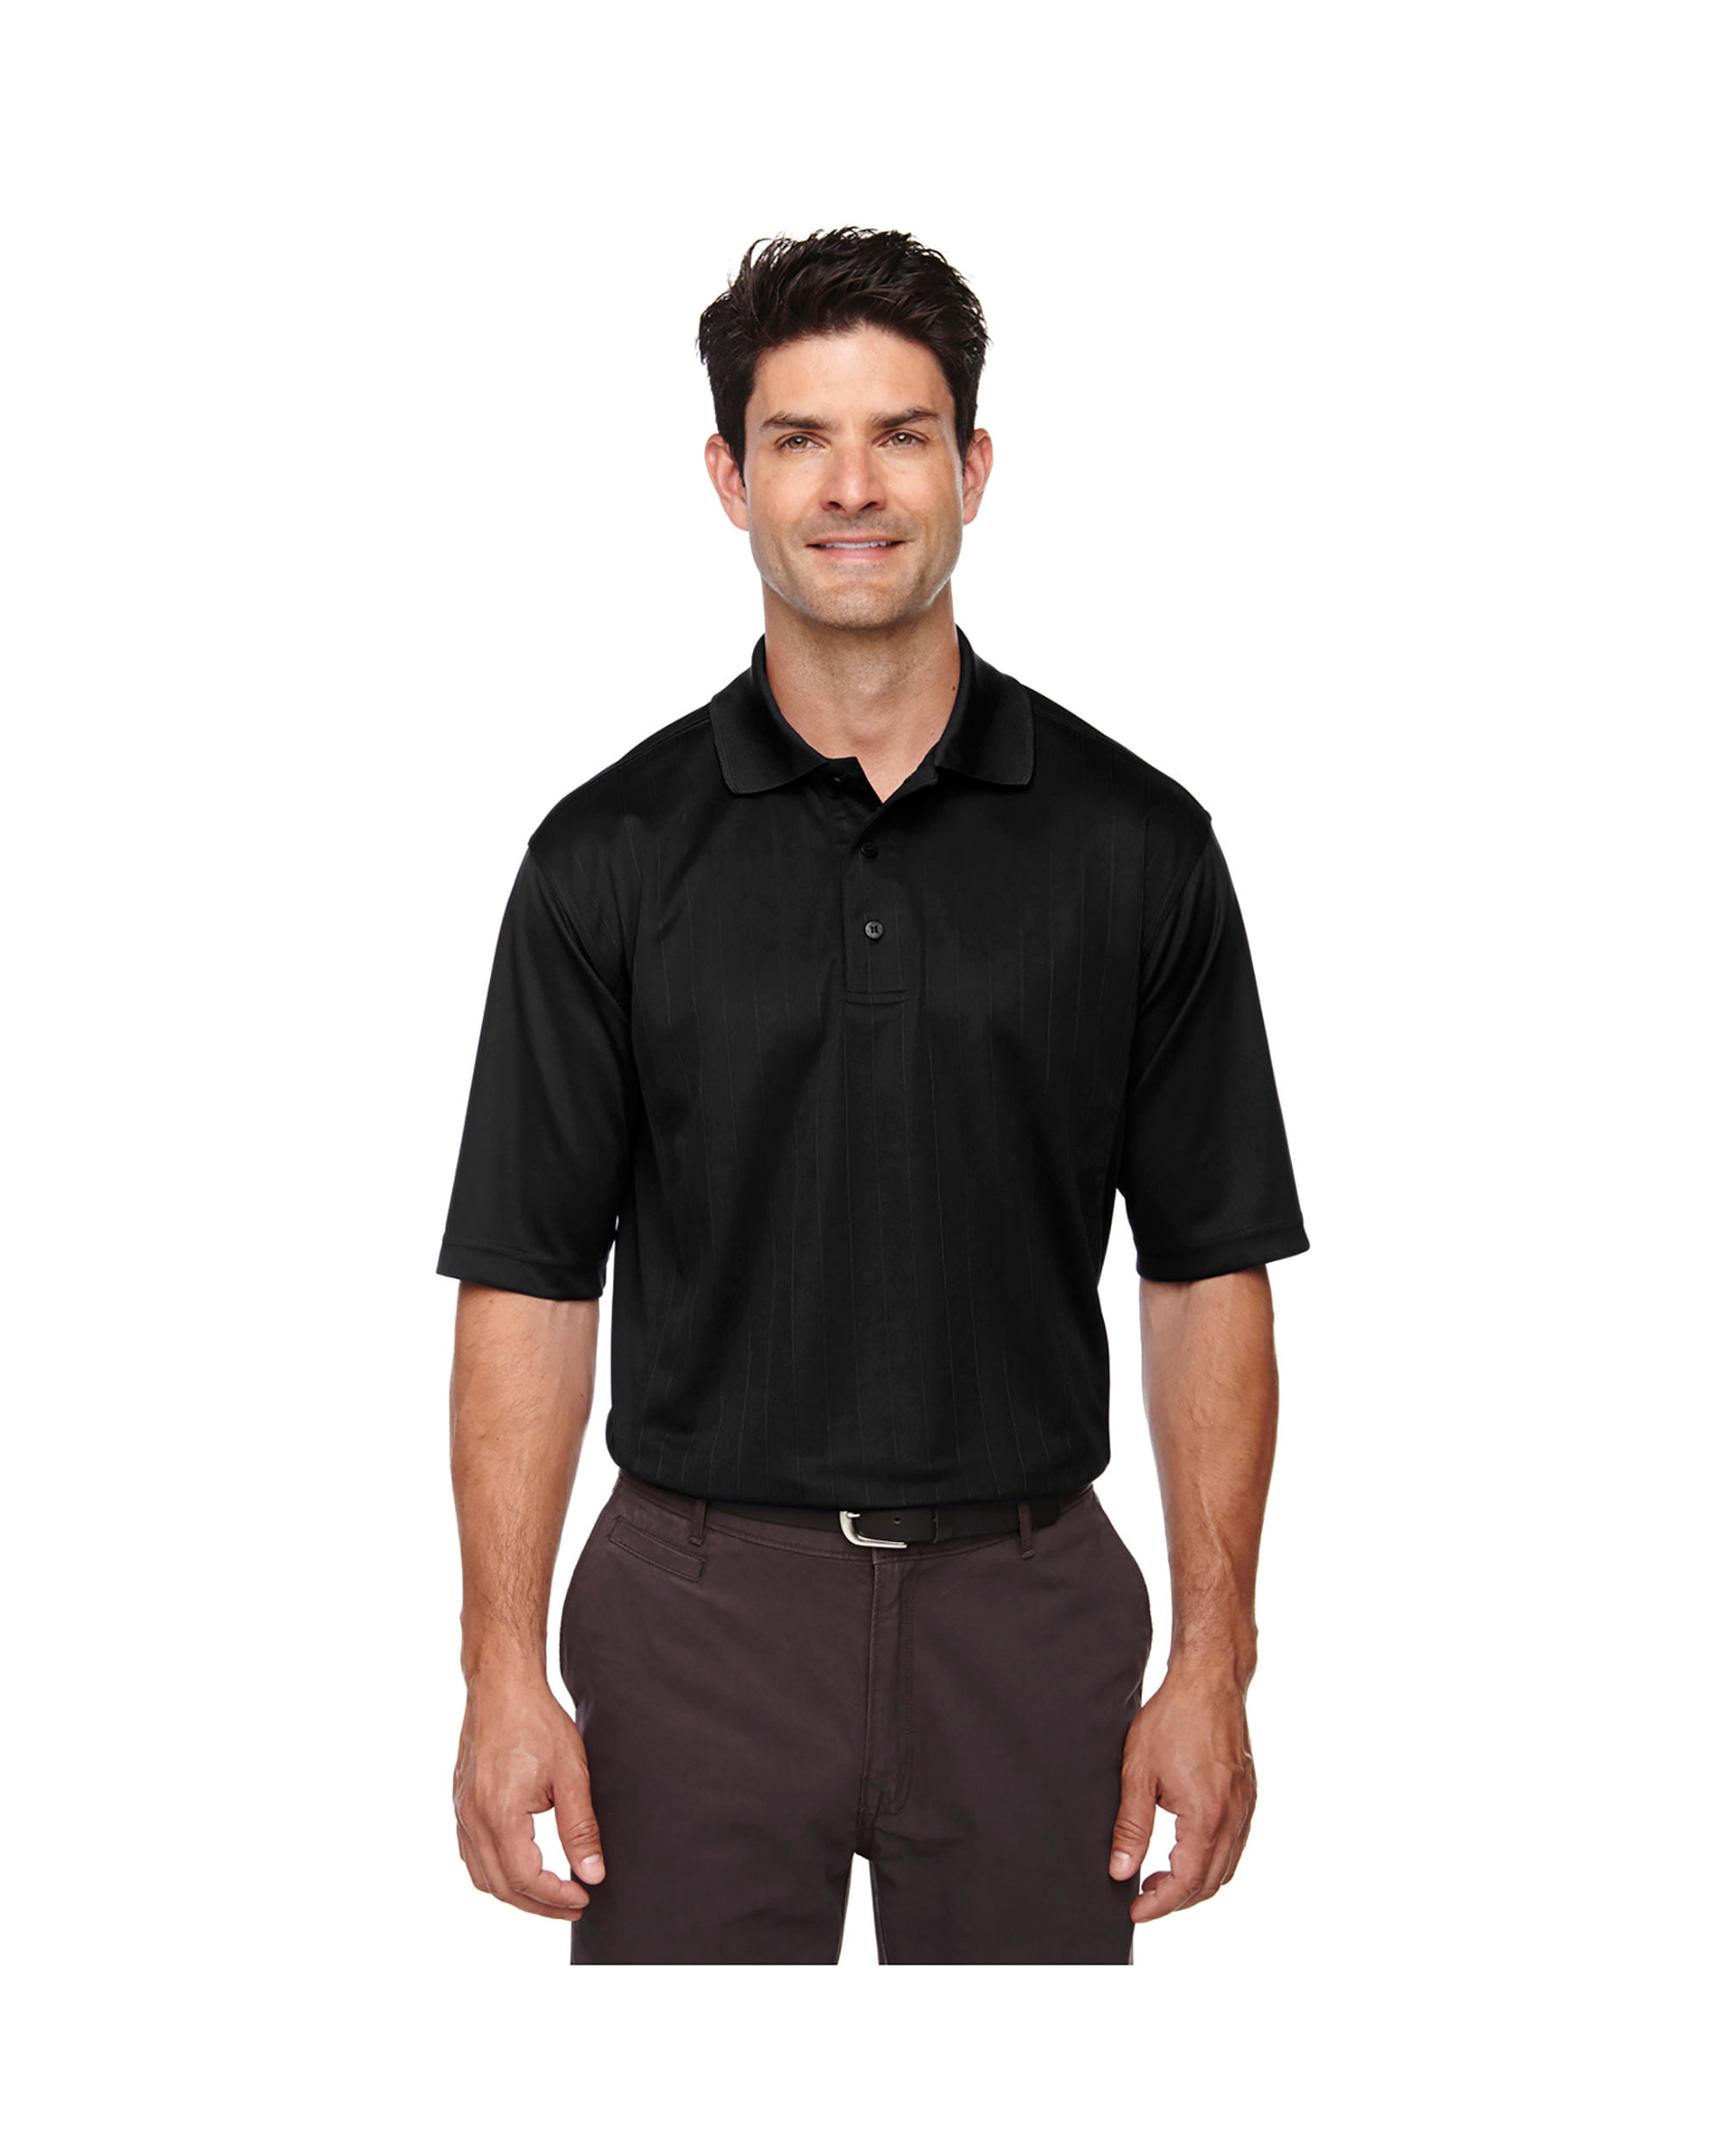 Ash City Men'sMoisture Wicking Pique Polo Shirt, Style 85092 - Walmart.com